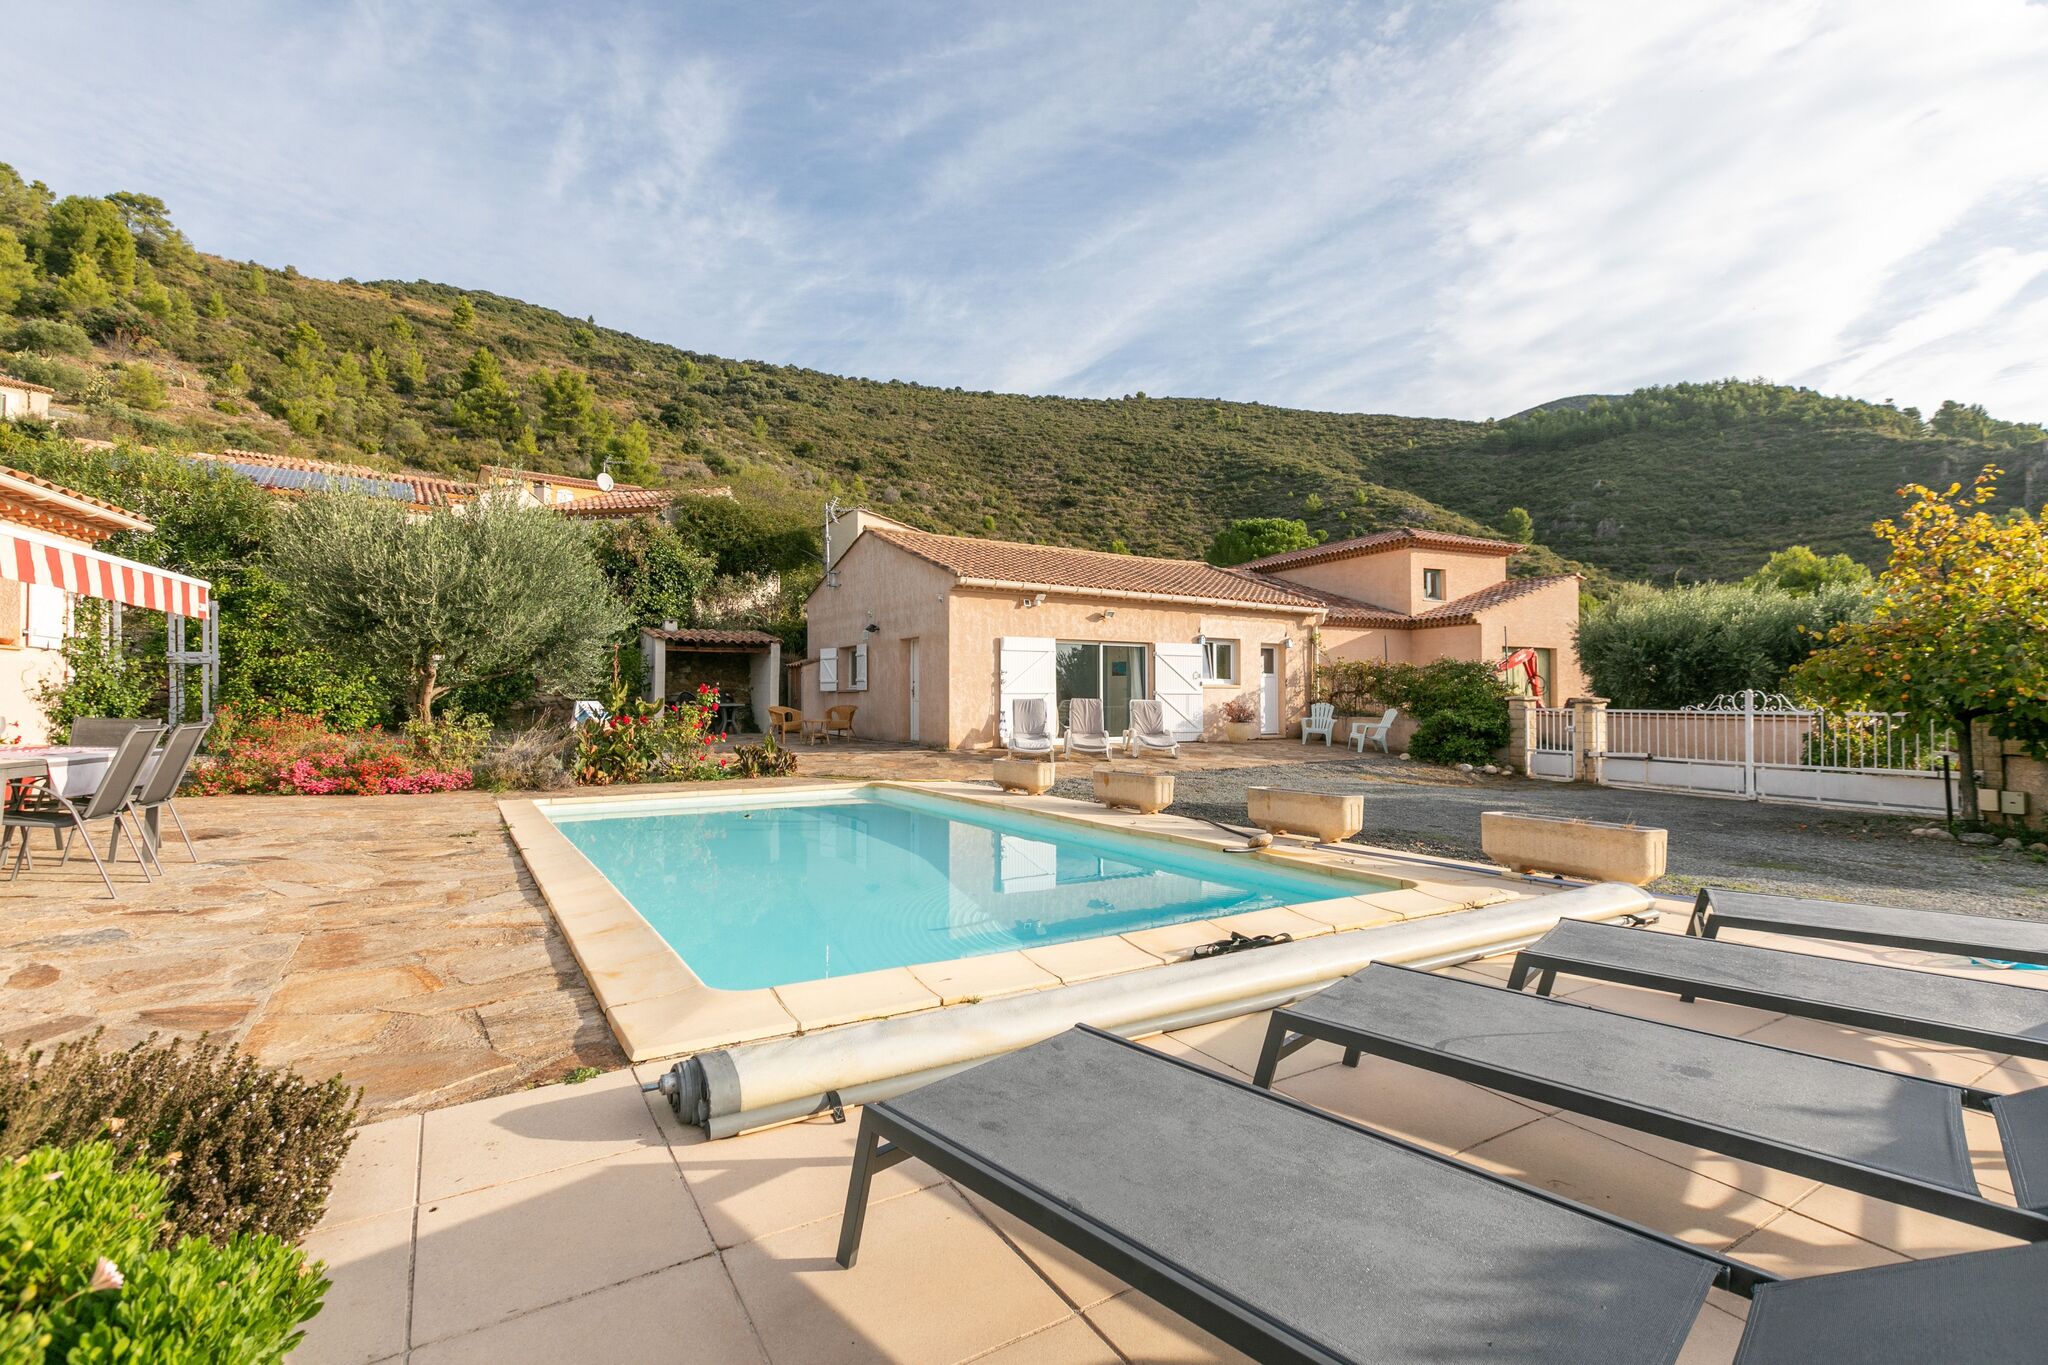 Maison dans le sud de la France avec piscine privée et clim